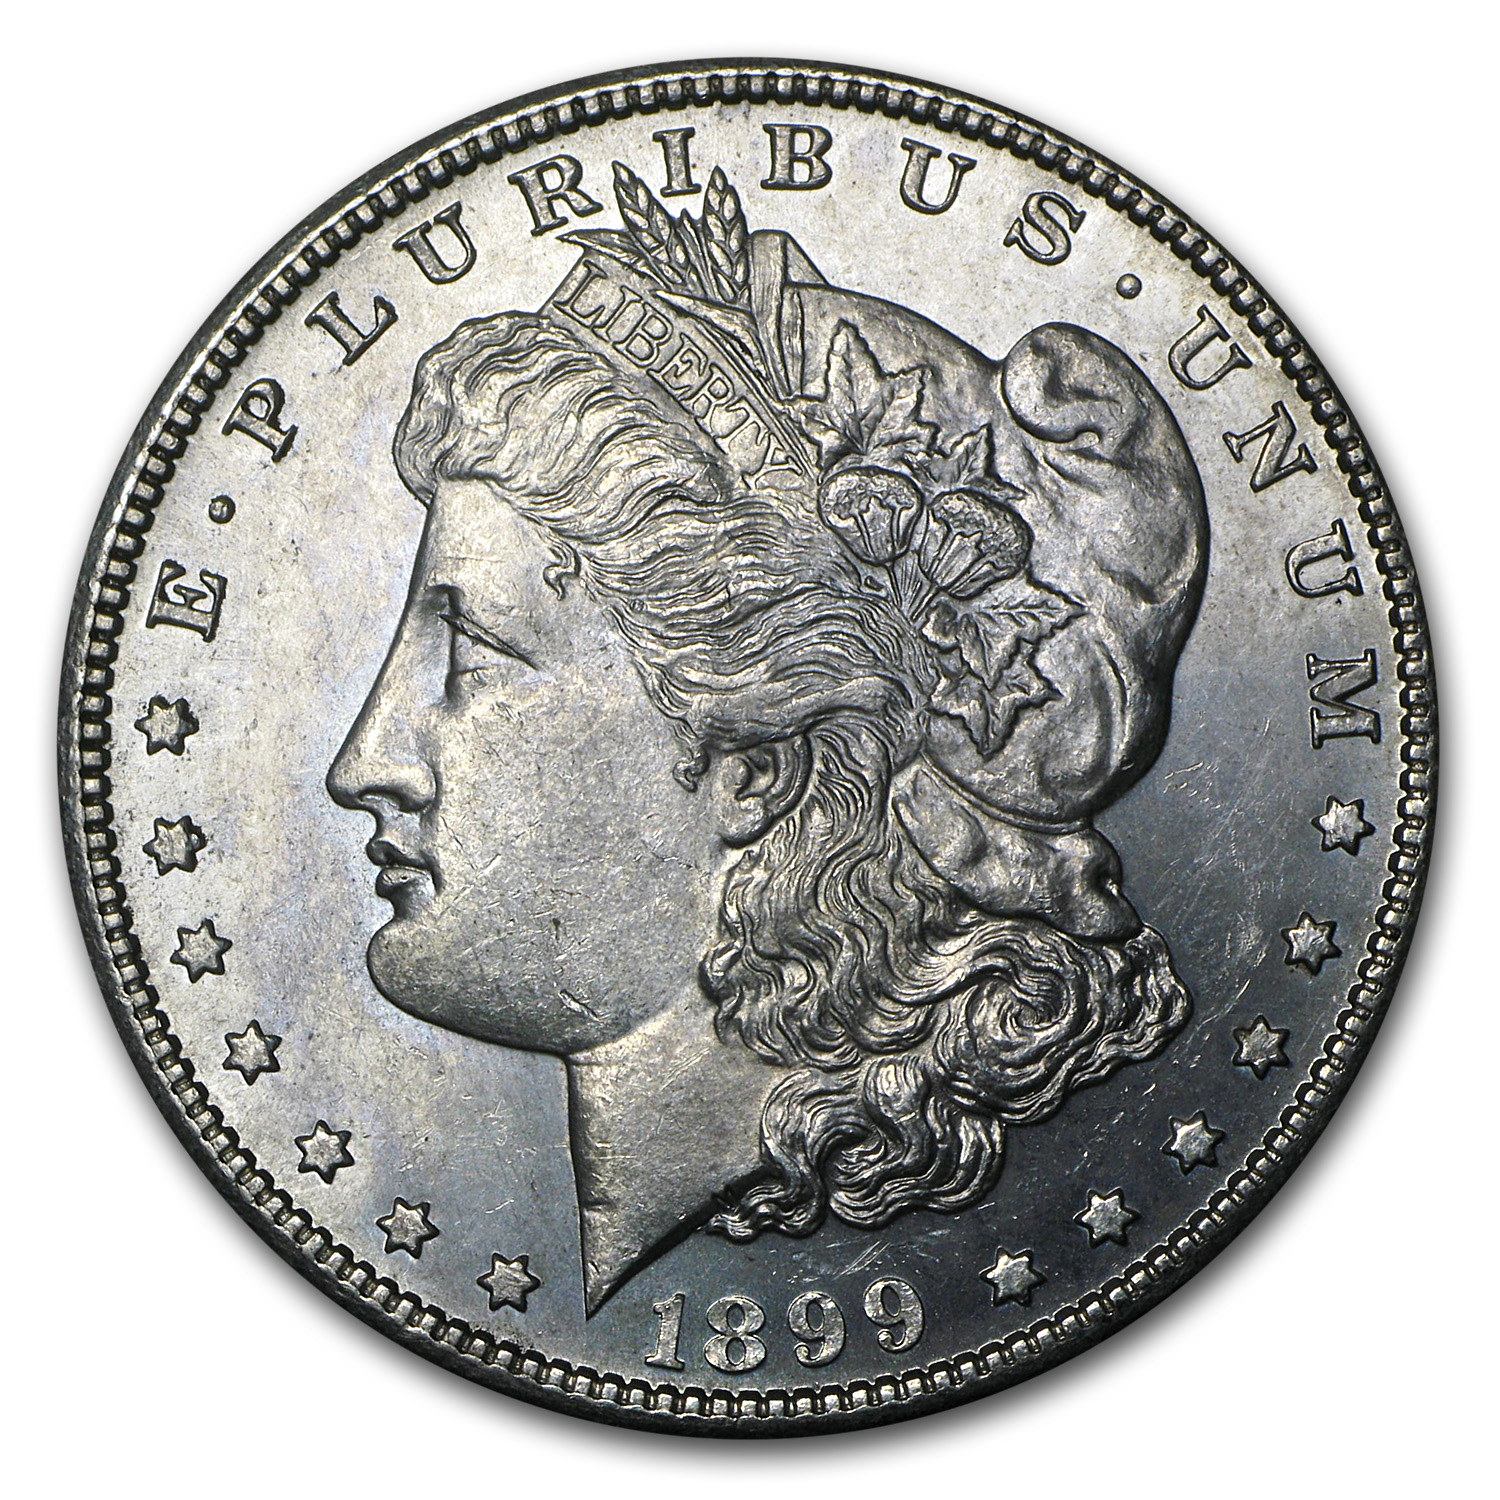 Buy 1899 Morgan Dollar BU